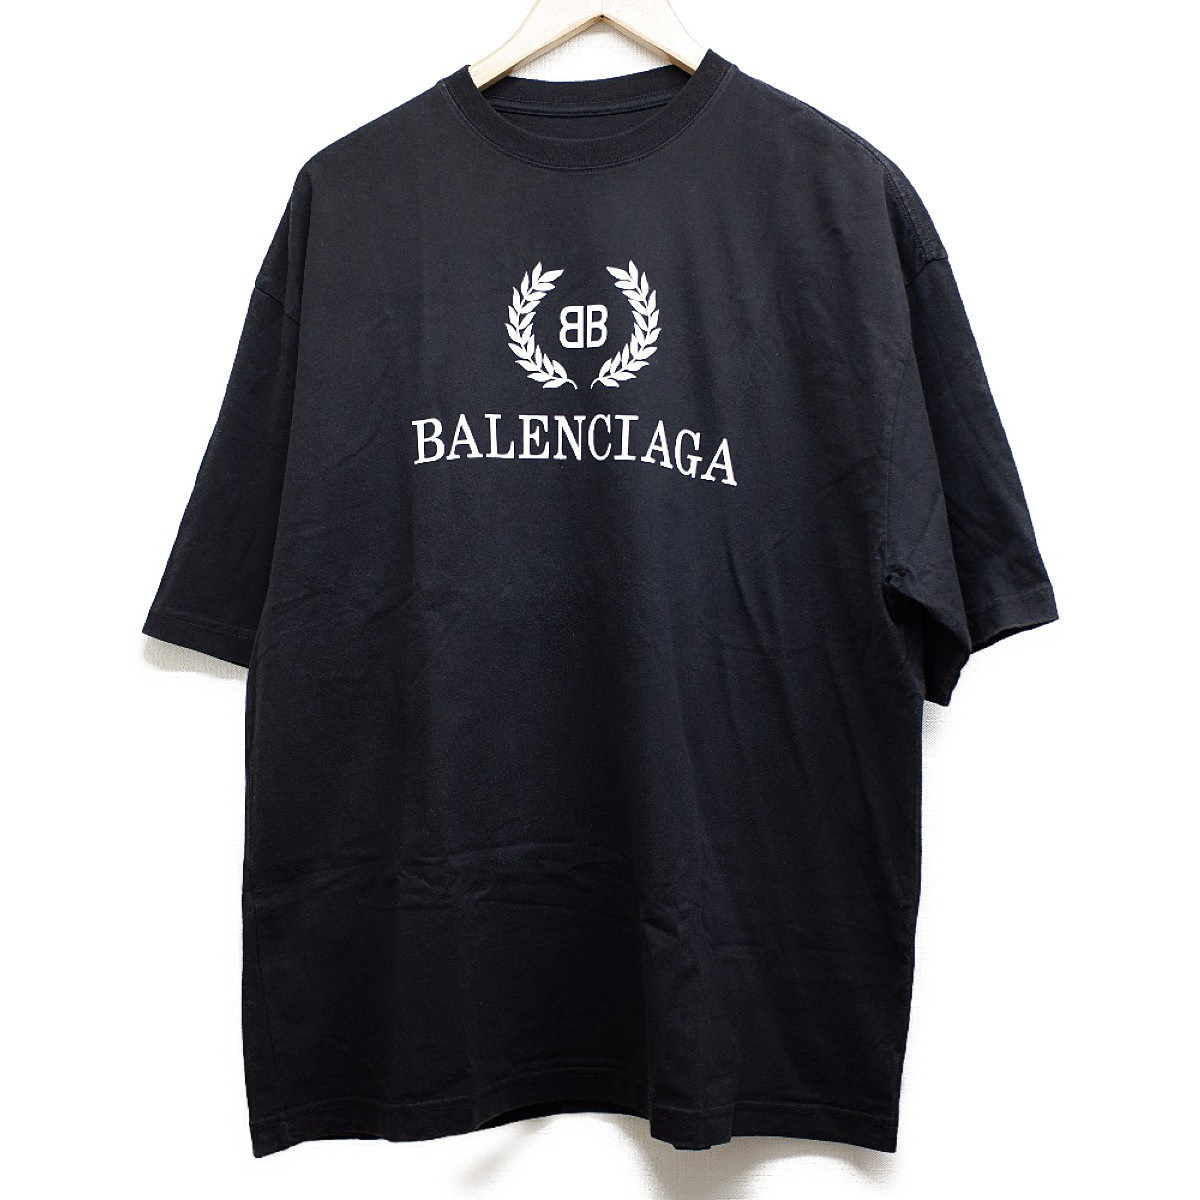 バレンシアガのメンズ服の556148 ロゴプリント クルーネック半袖T